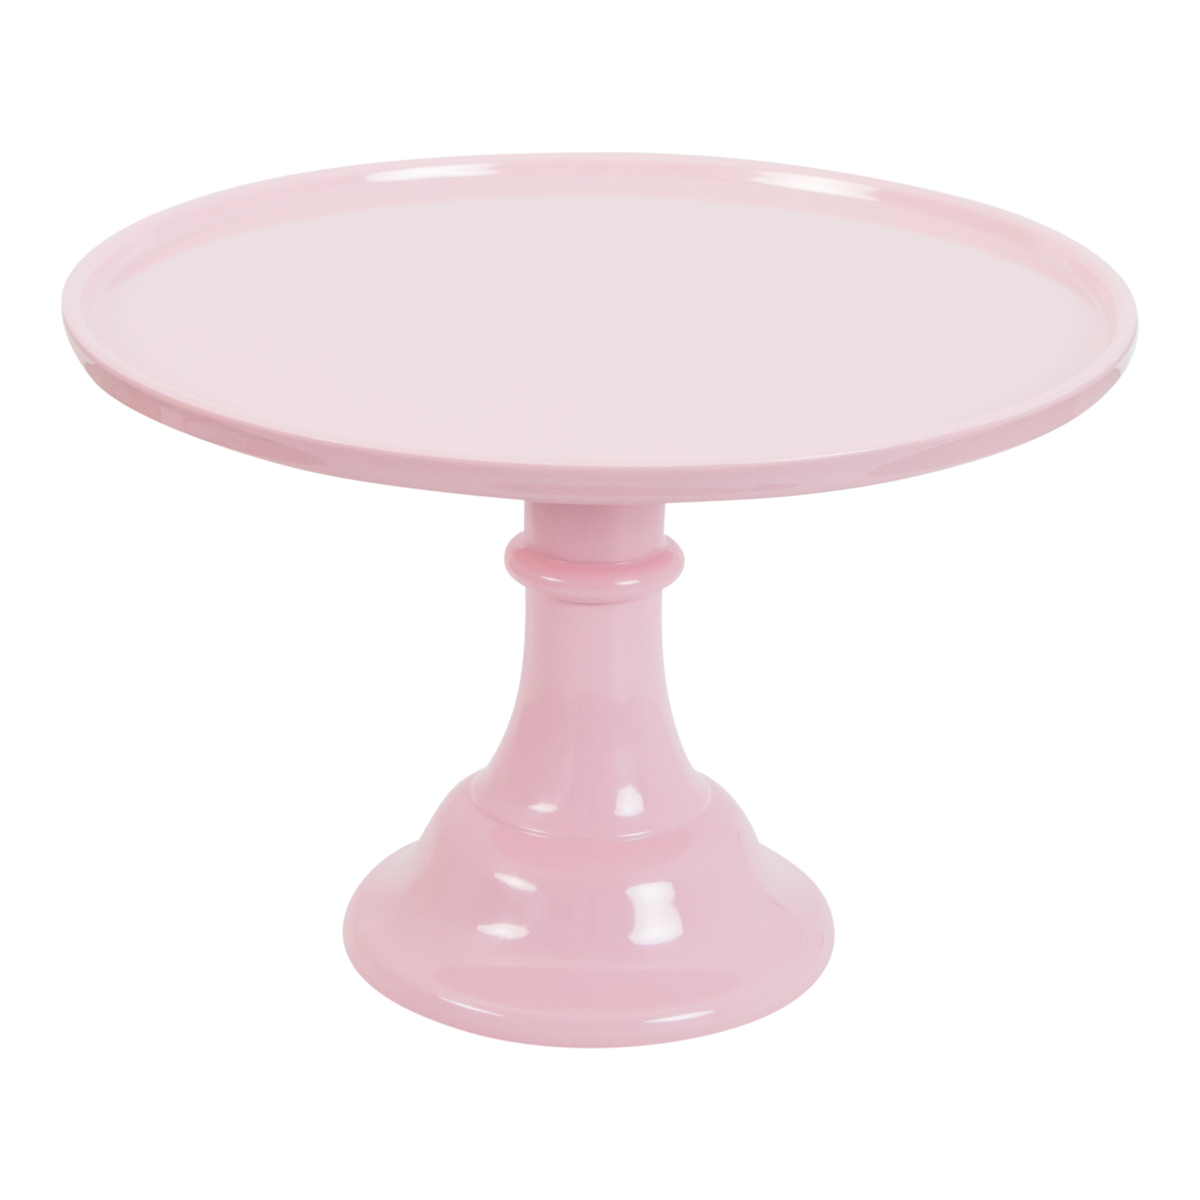 Imagen de producto: Stand rosa de melamina 29,7 cm